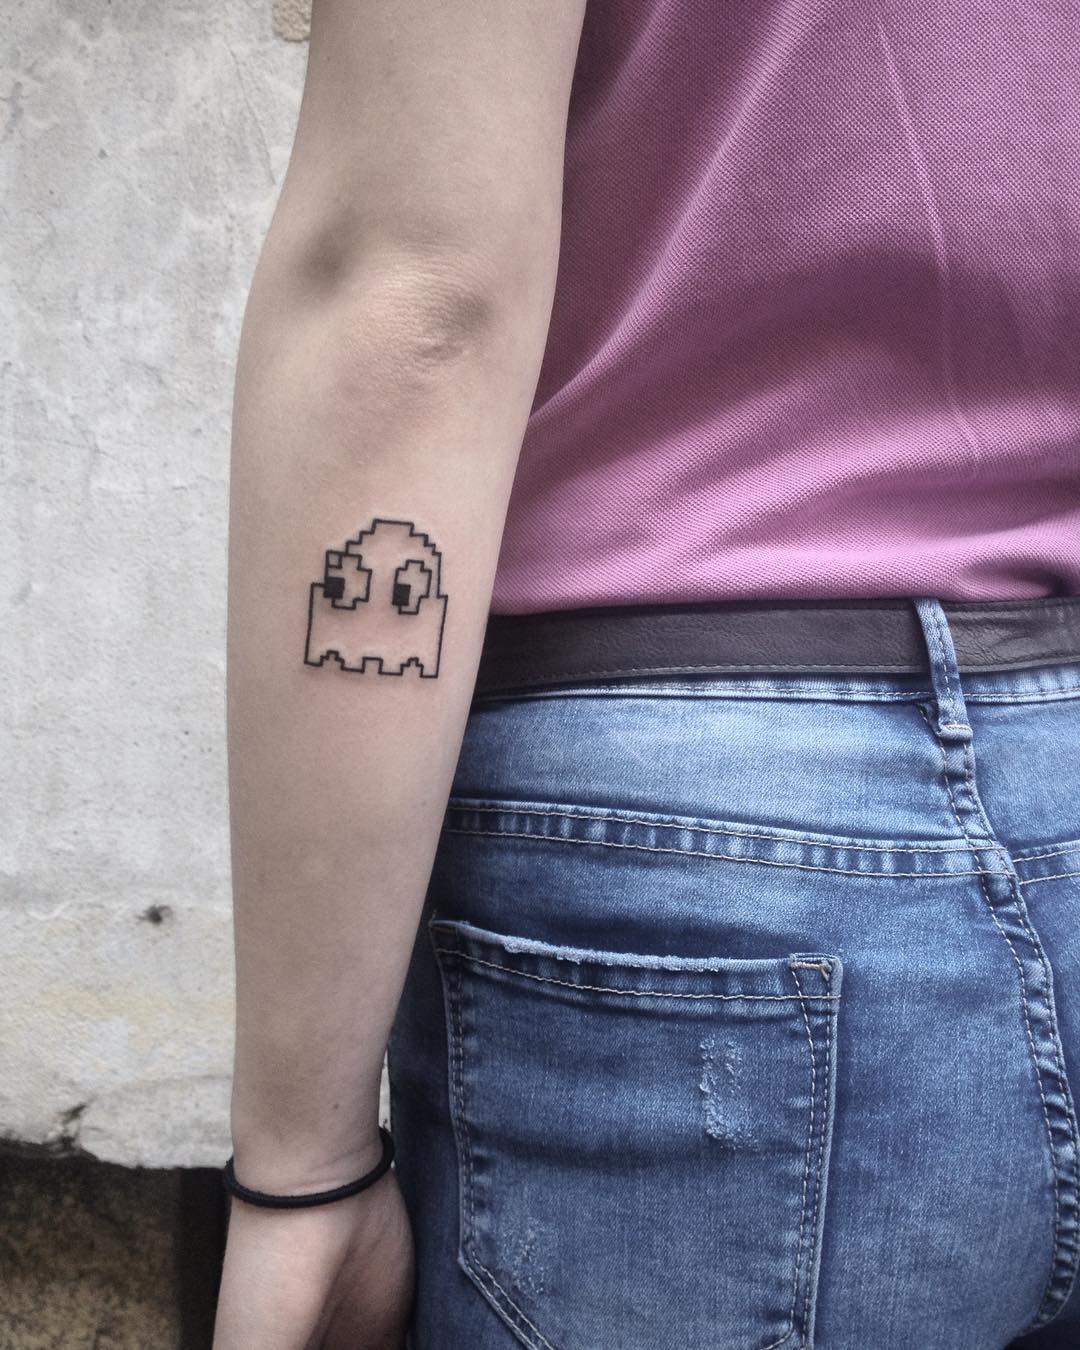 Pacman tattoo by @skrzyniarz_